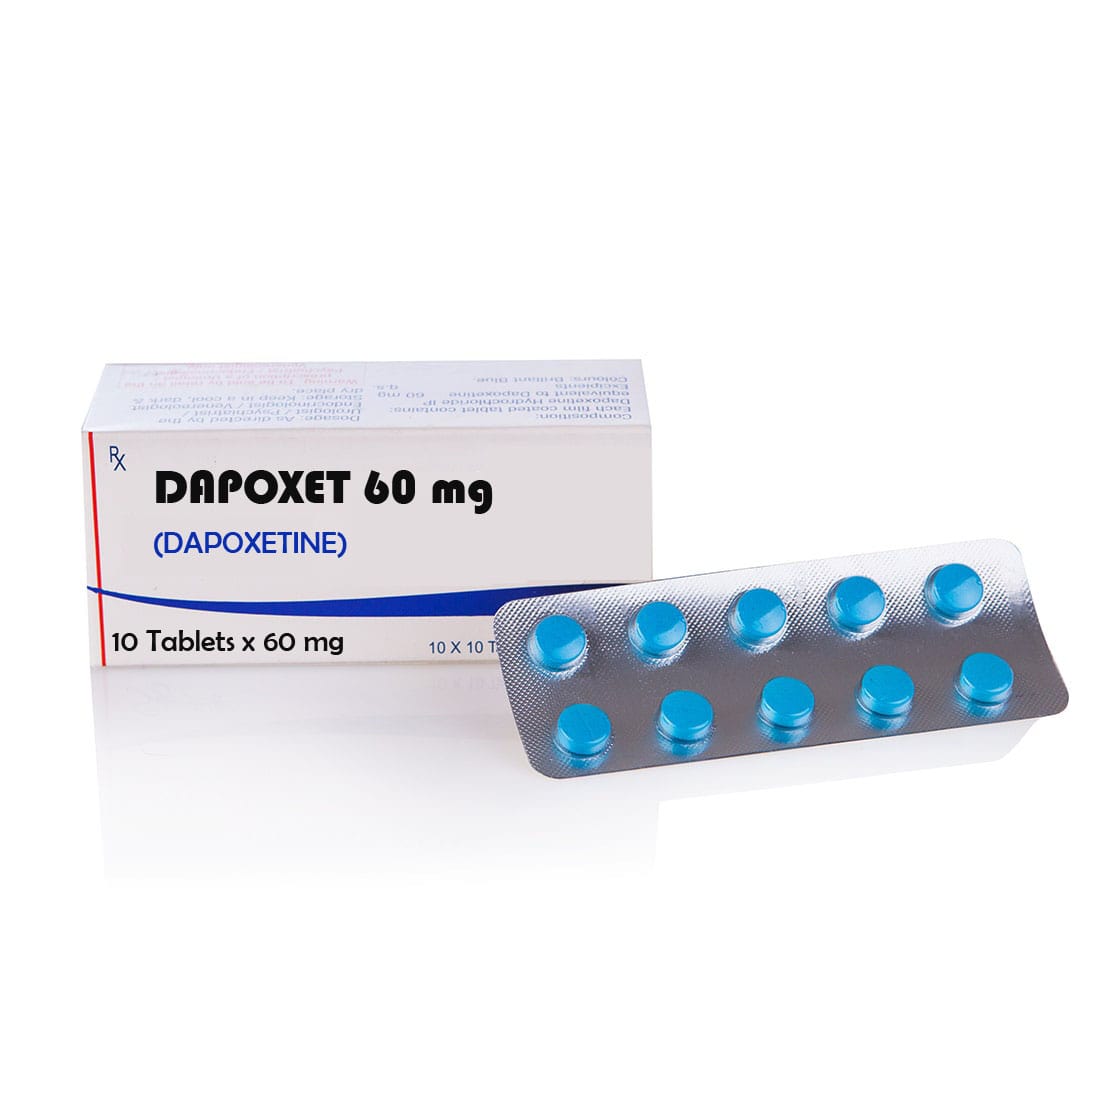 Dapoxet 60 (Dapoxetine) – 10 табл. х 60 мг.